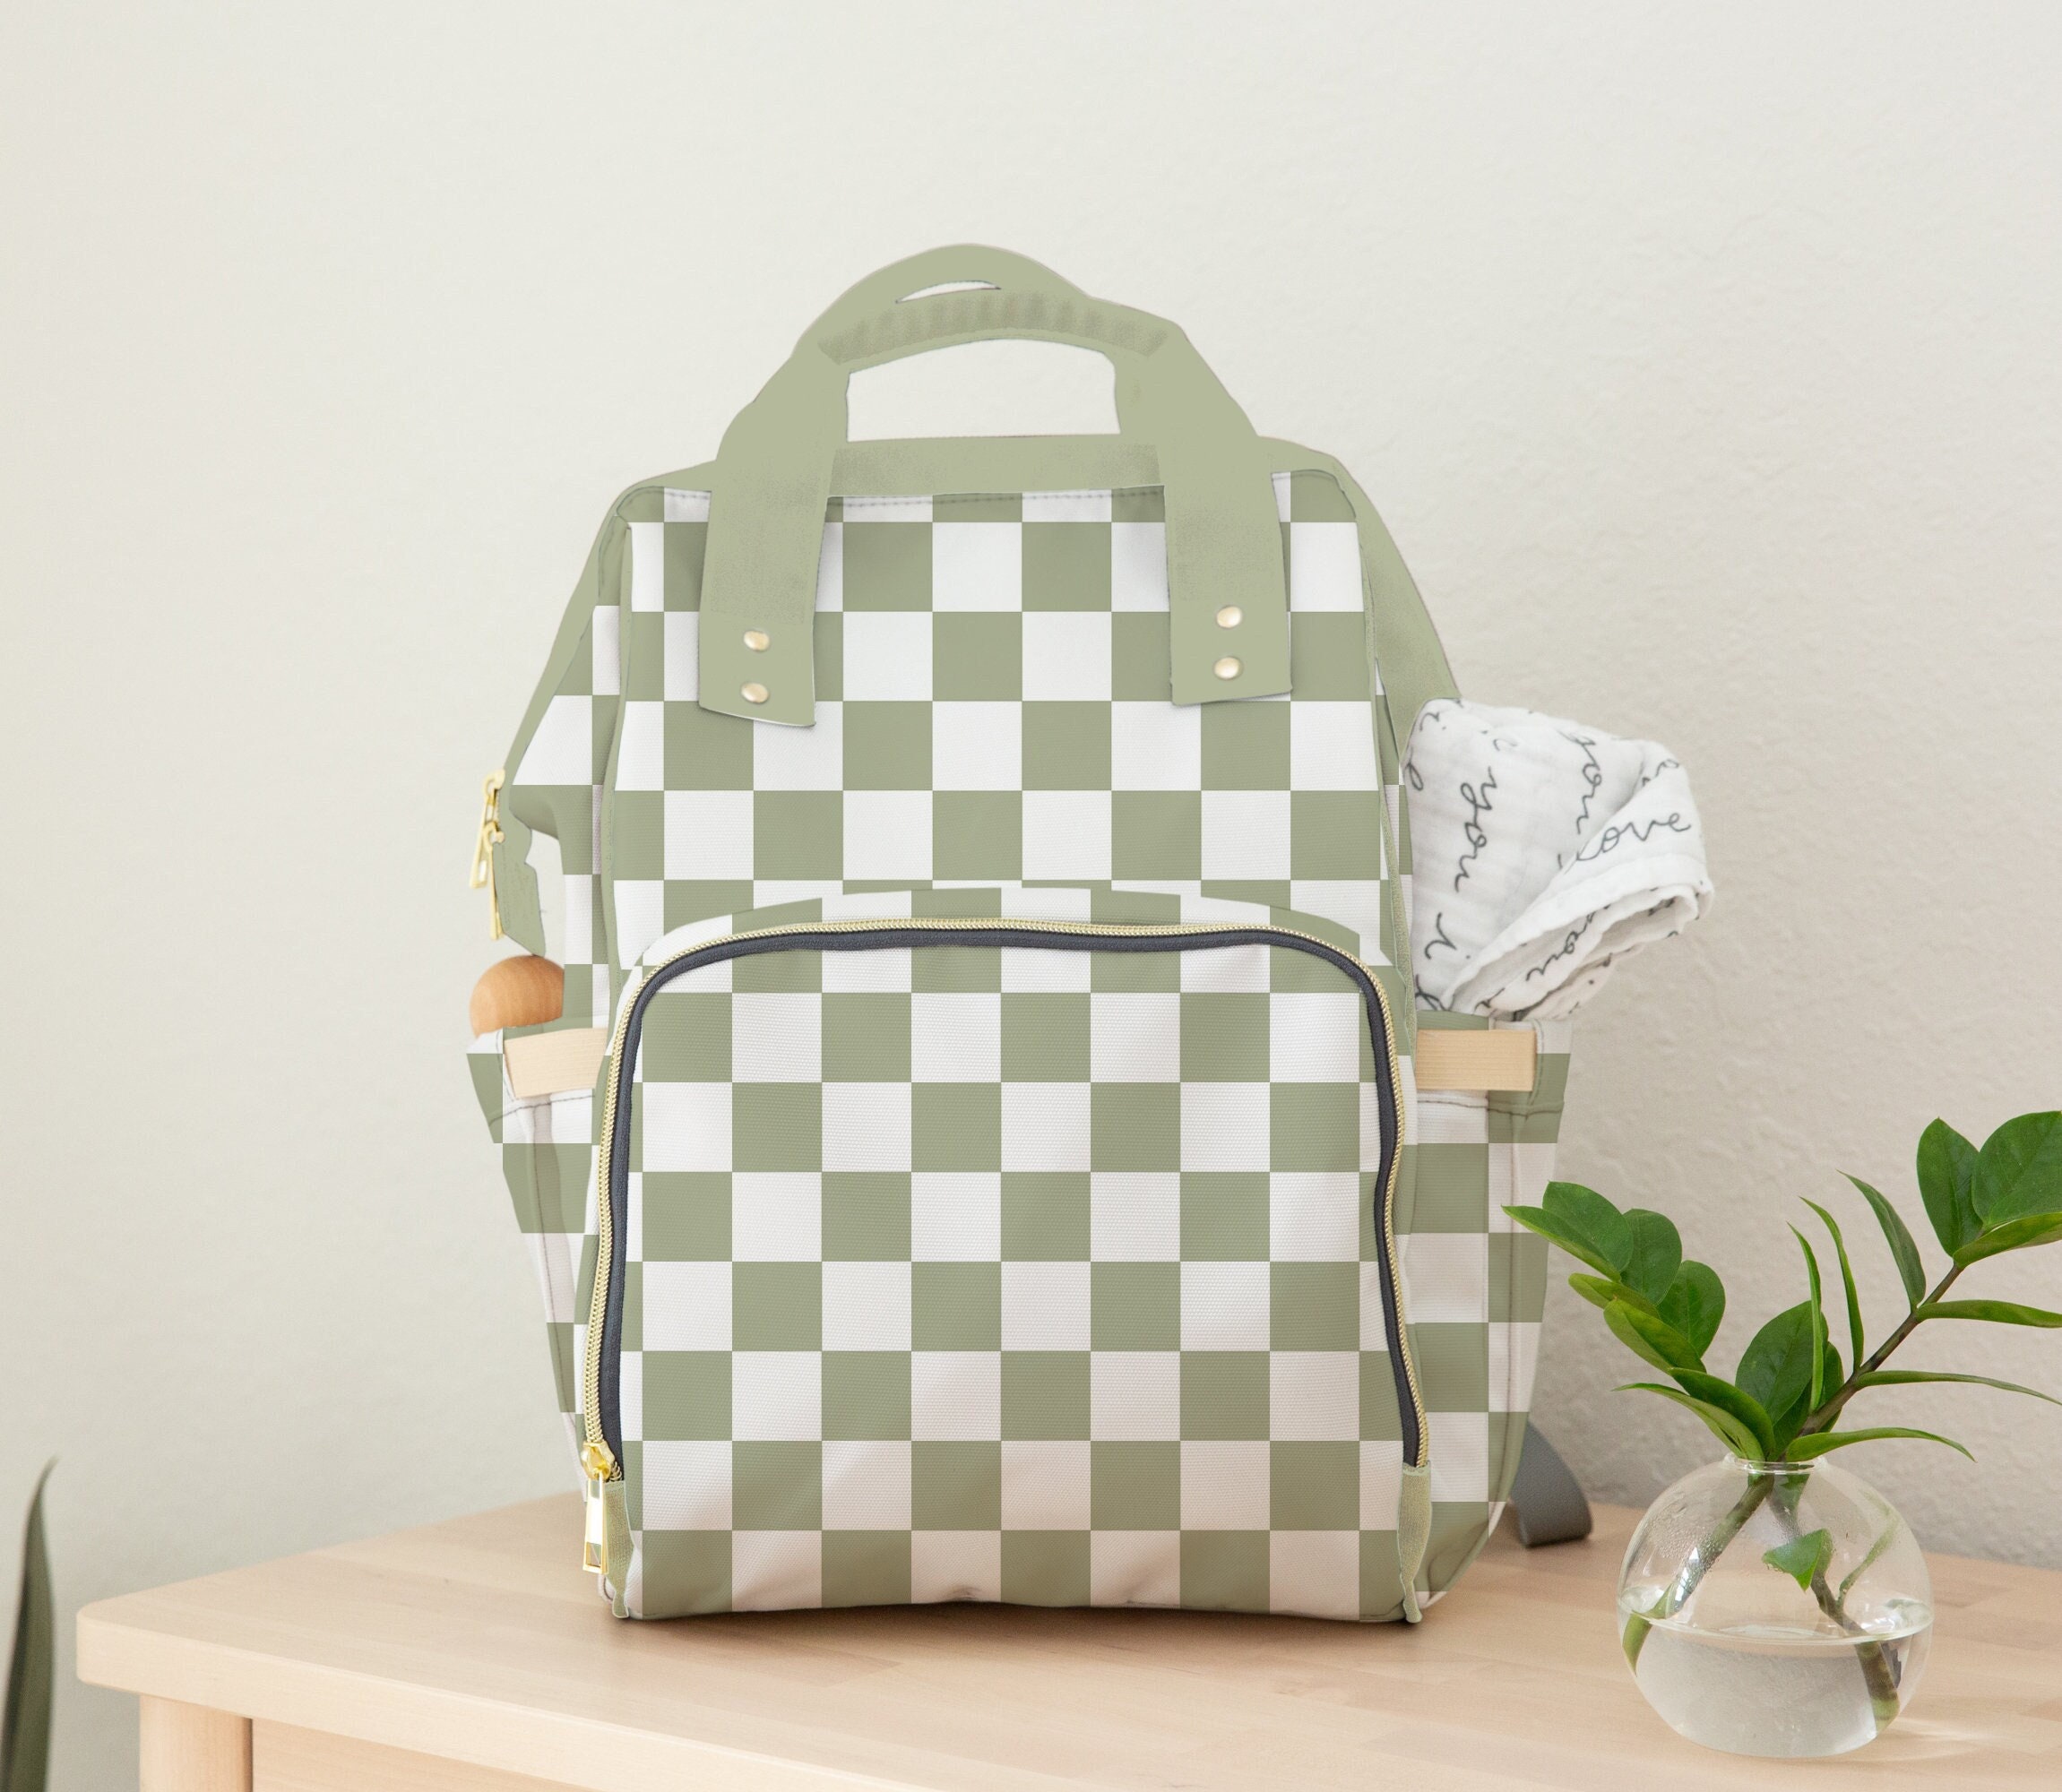 LV DIAPER BAG, LV DIAPER BAG Color: Green Material: Fabric …